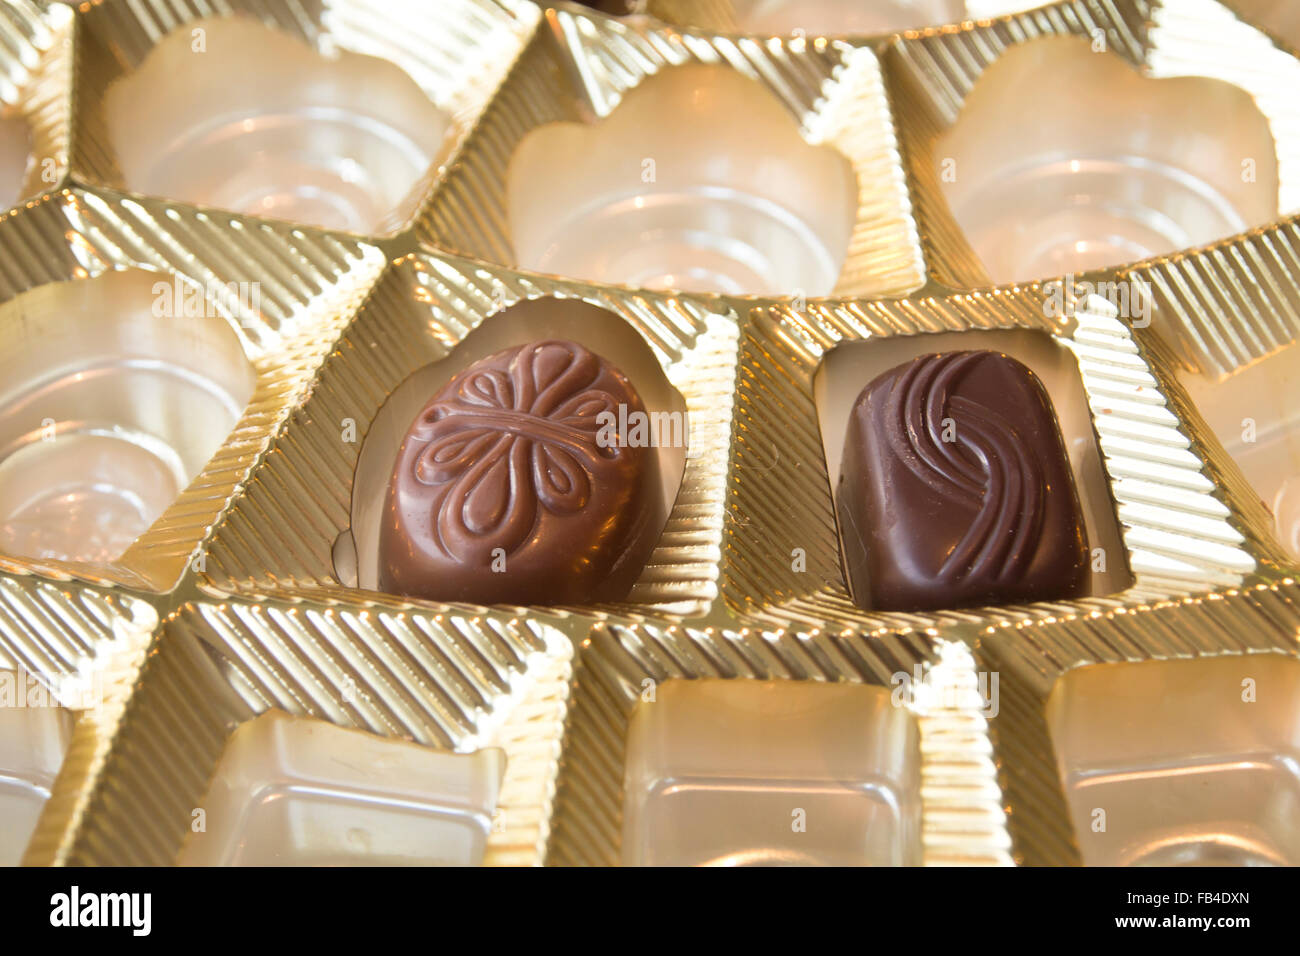 Zart und verführerisch Einzelstücke von Schokolade in goldene Schachtel Stockfoto